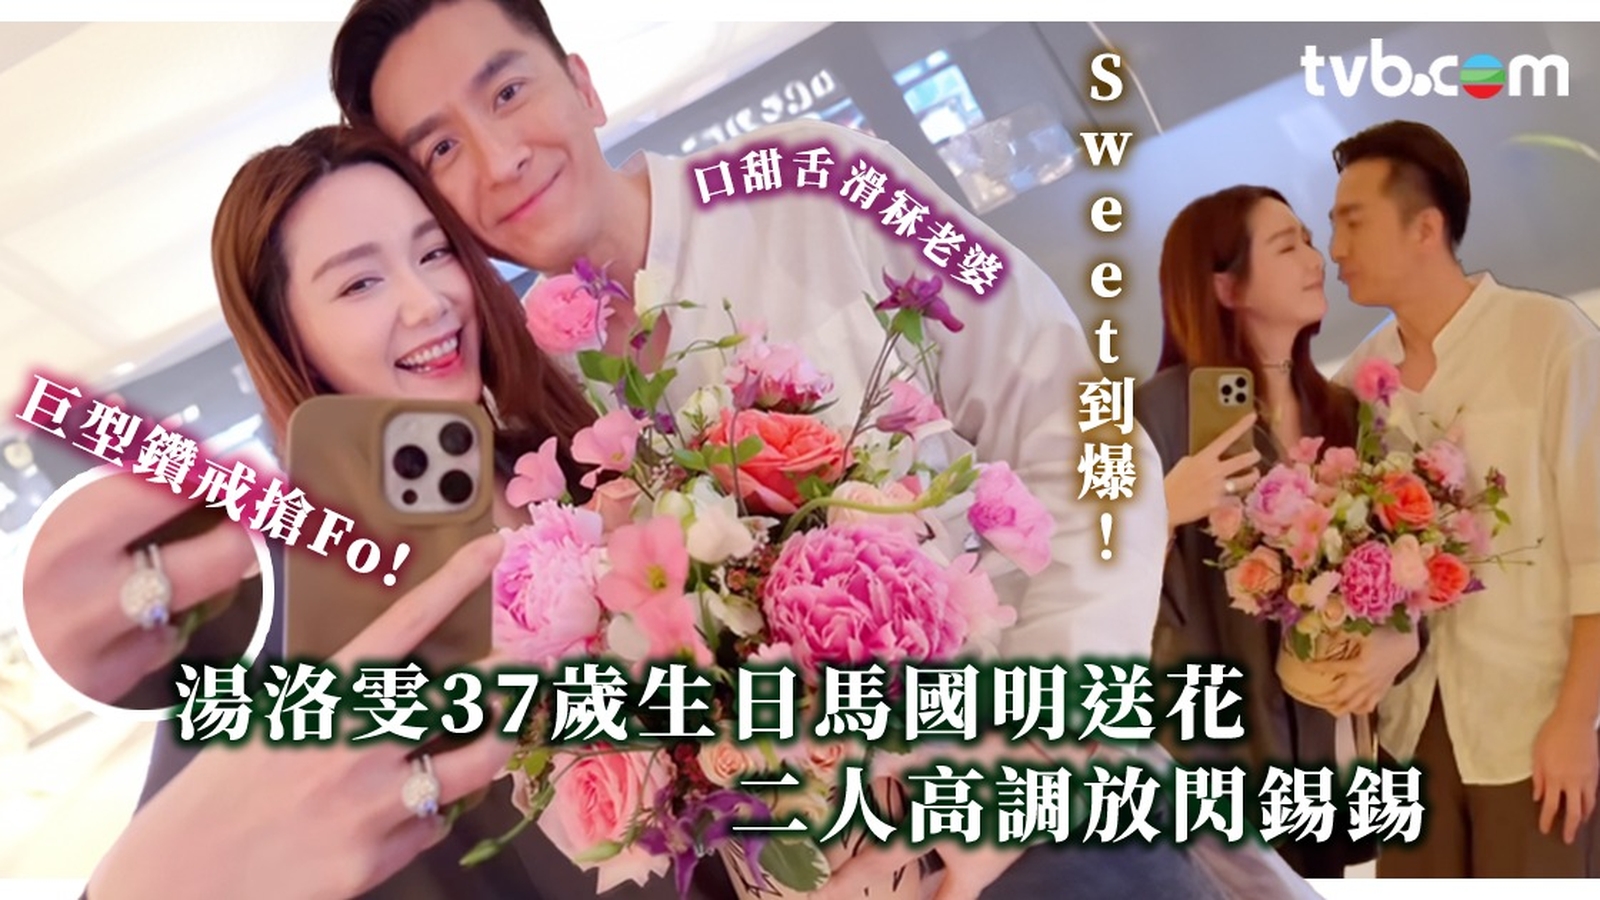 湯洛雯37歲生日馬國明送花冧老婆 二人高調放閃錫錫甜到漏